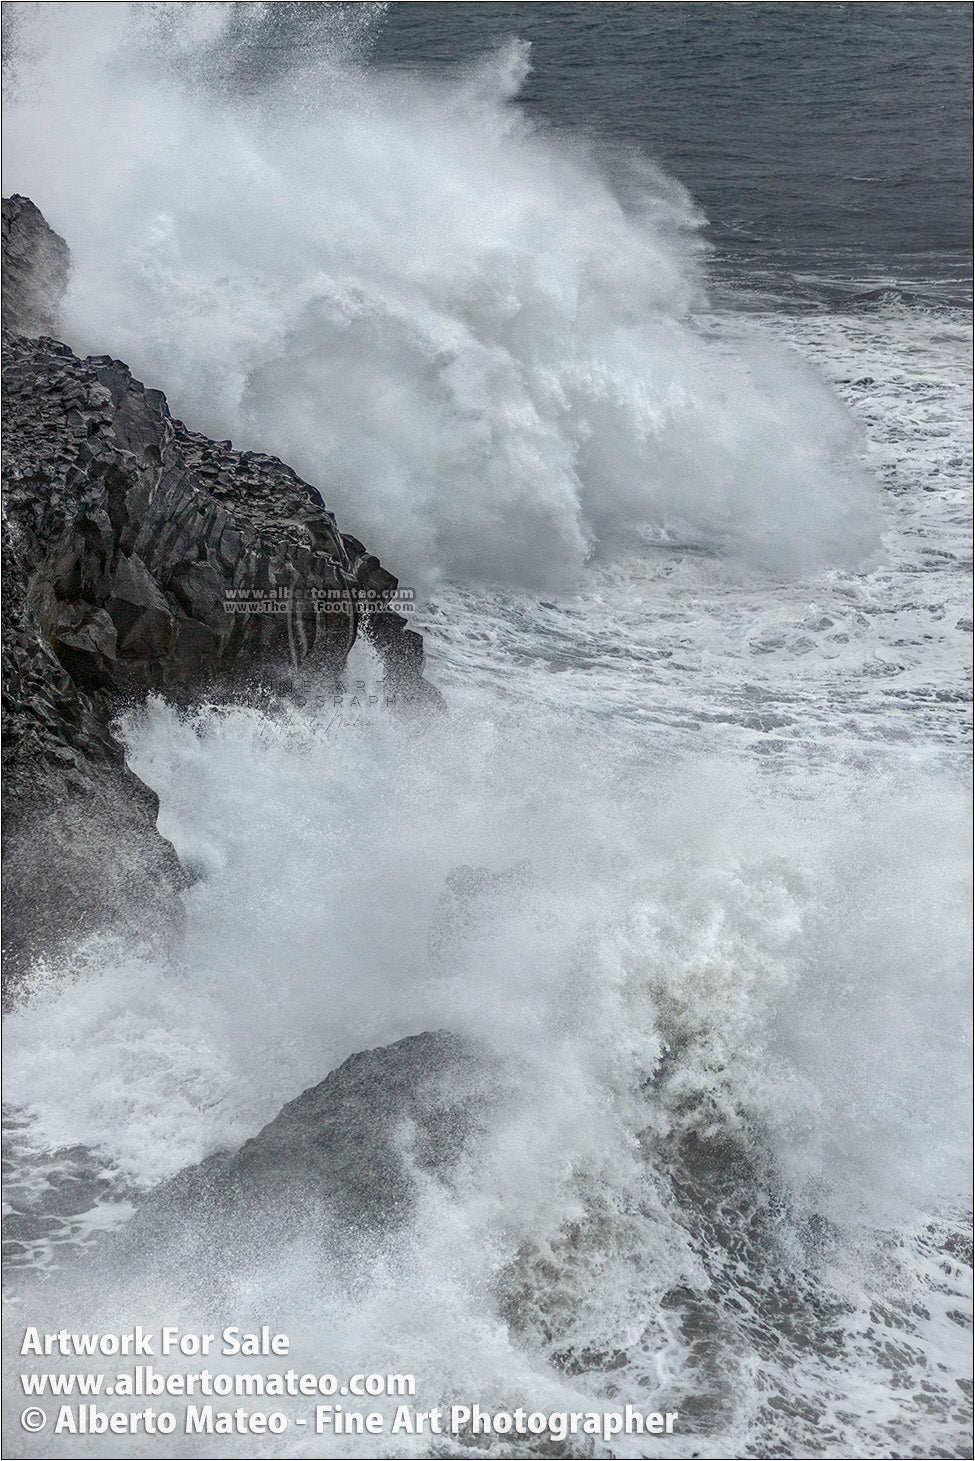 Sea Gale, Breaking Waves, Dyorhaley, Iceland. 2/5